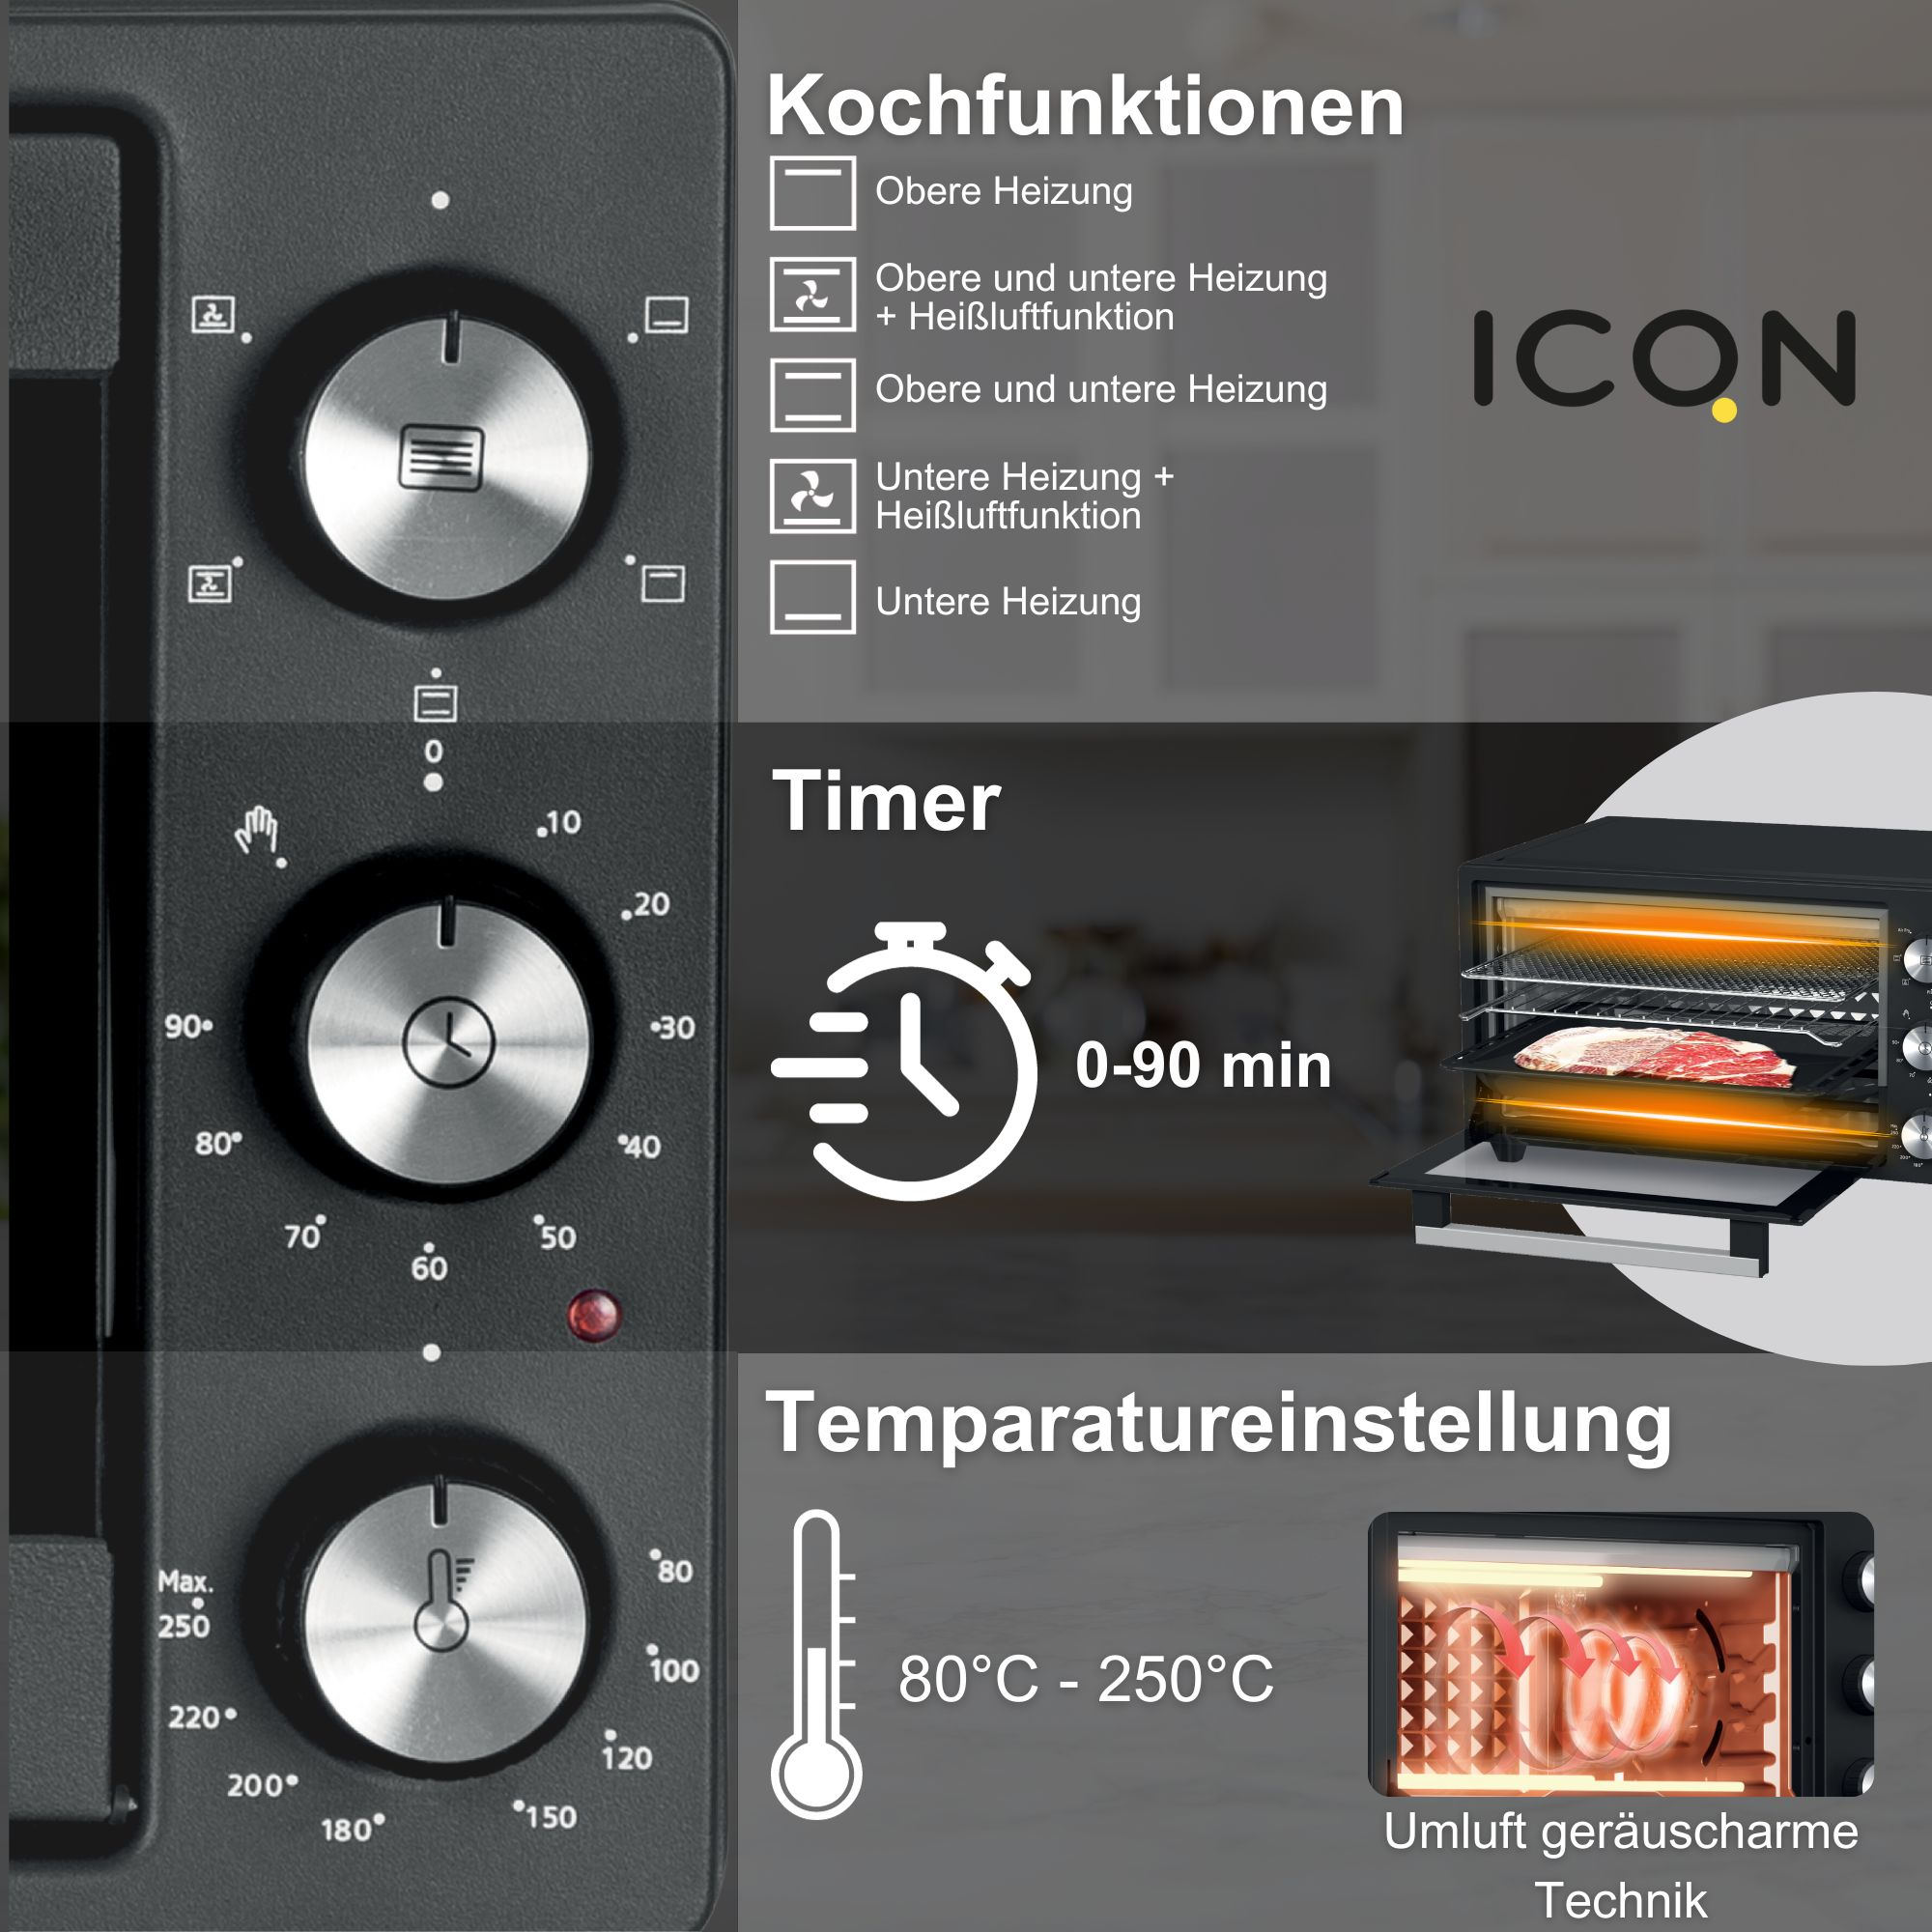 ICQN 20 L, 1500 W, Timer 80°-250°C, Grill-Funktion, Min. Minibackofen 90 5